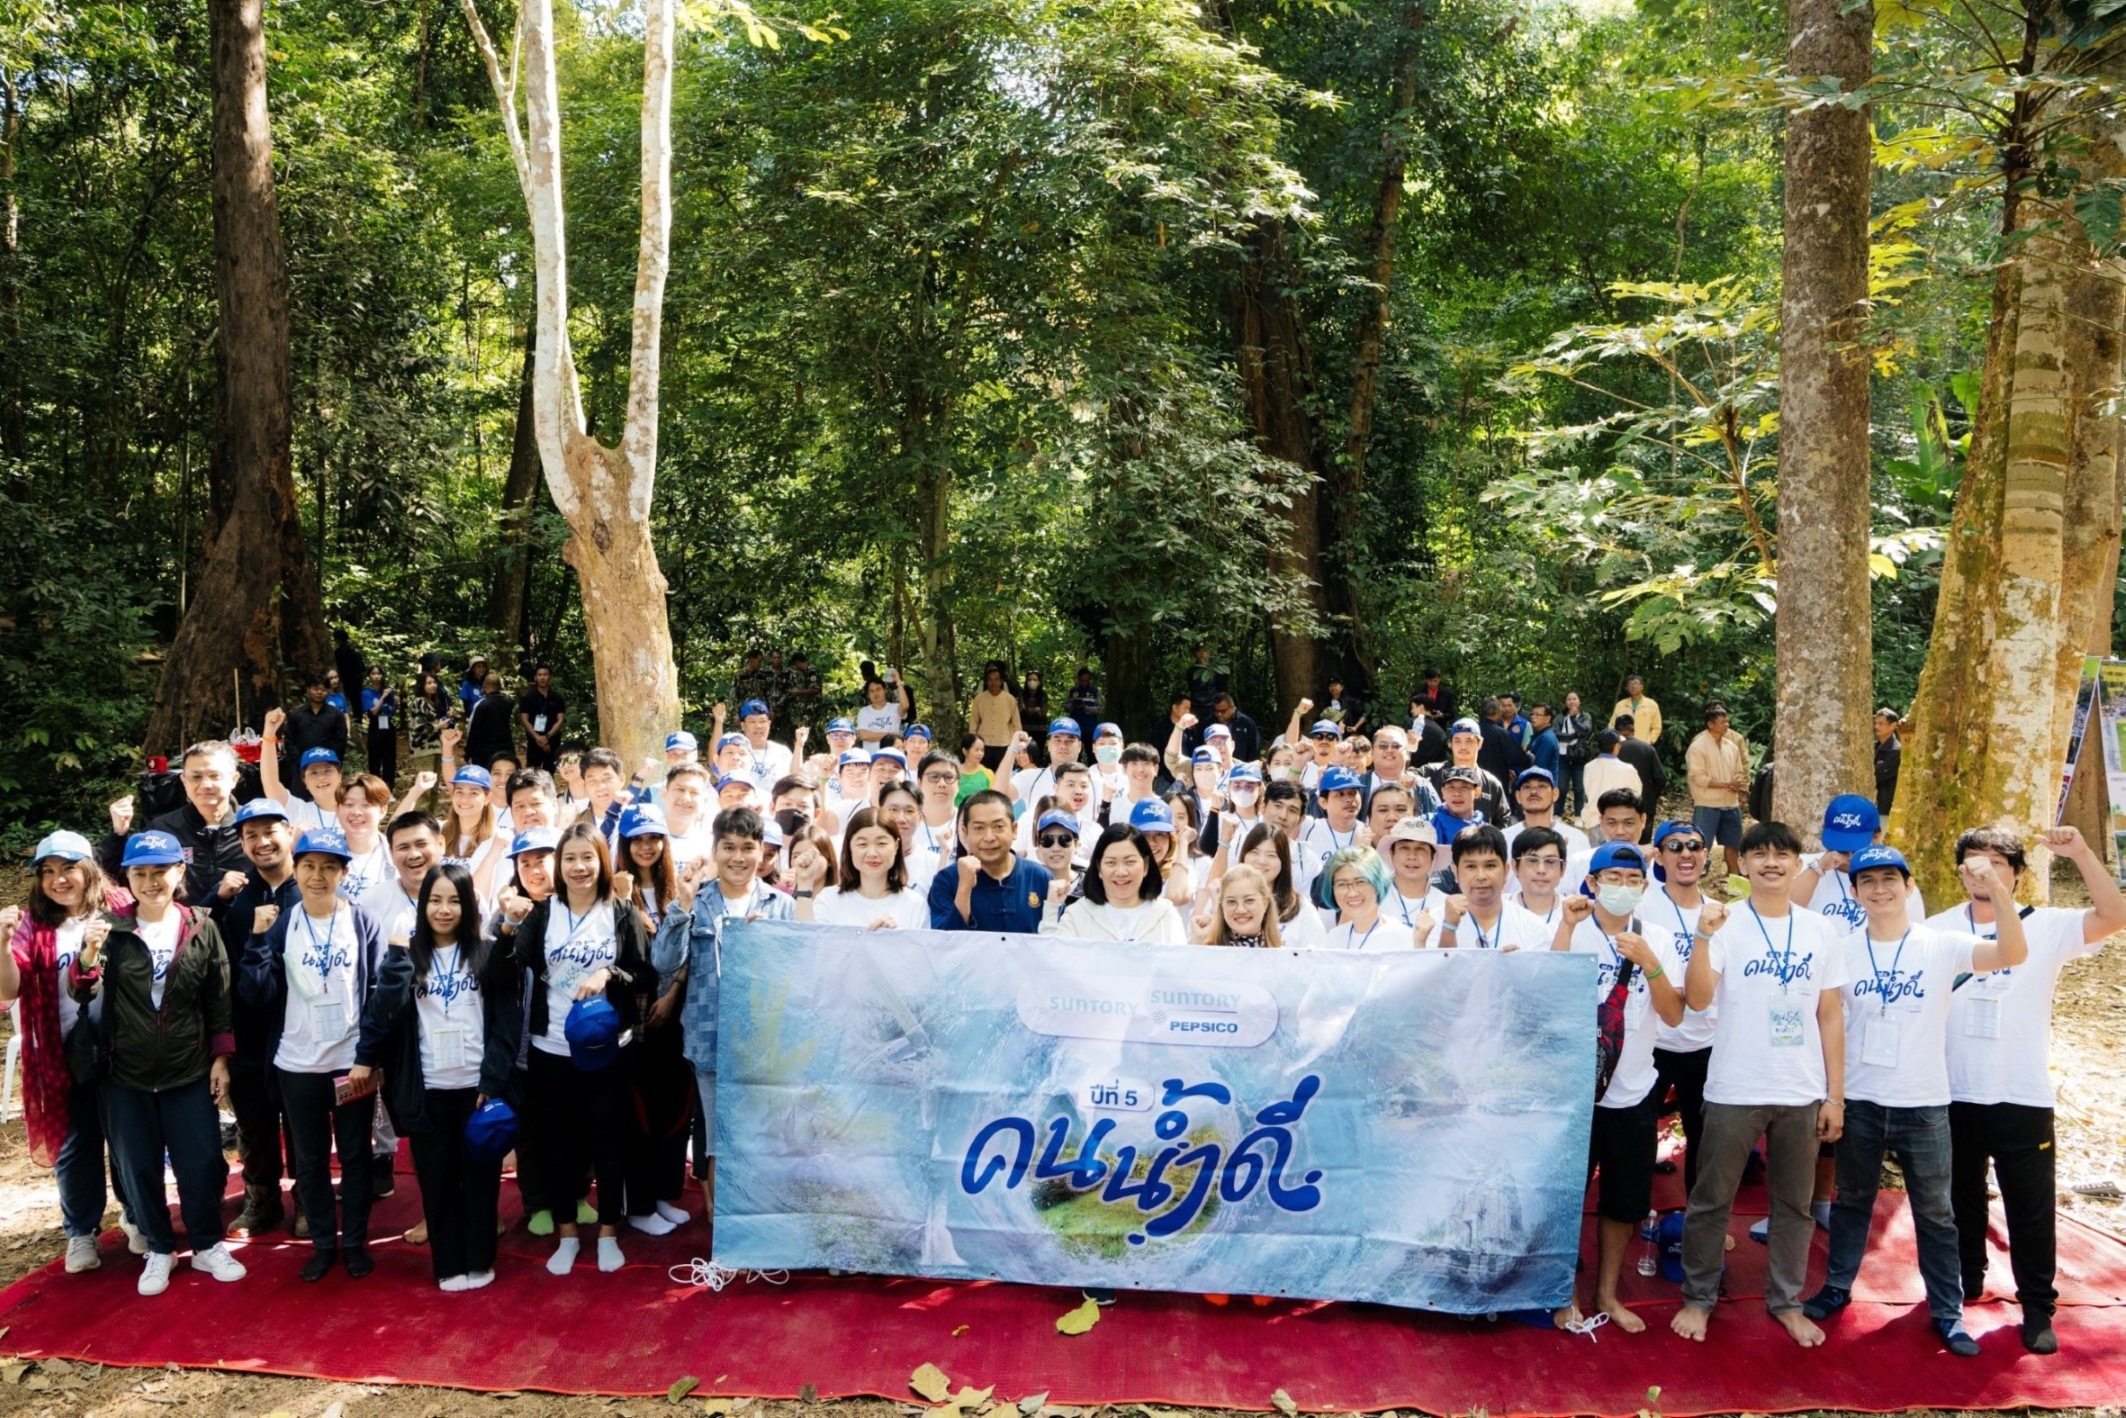 ซันโทรี่ เป๊ปซี่โค ประเทศไทย ตอกย้ำพันธกิจรักษ์น้ำ ผ่านกิจกรรม “คน น้ำ ดี” และโครงการ “พื้นที่ชุมชน คนอยู่กับน้ำ” 